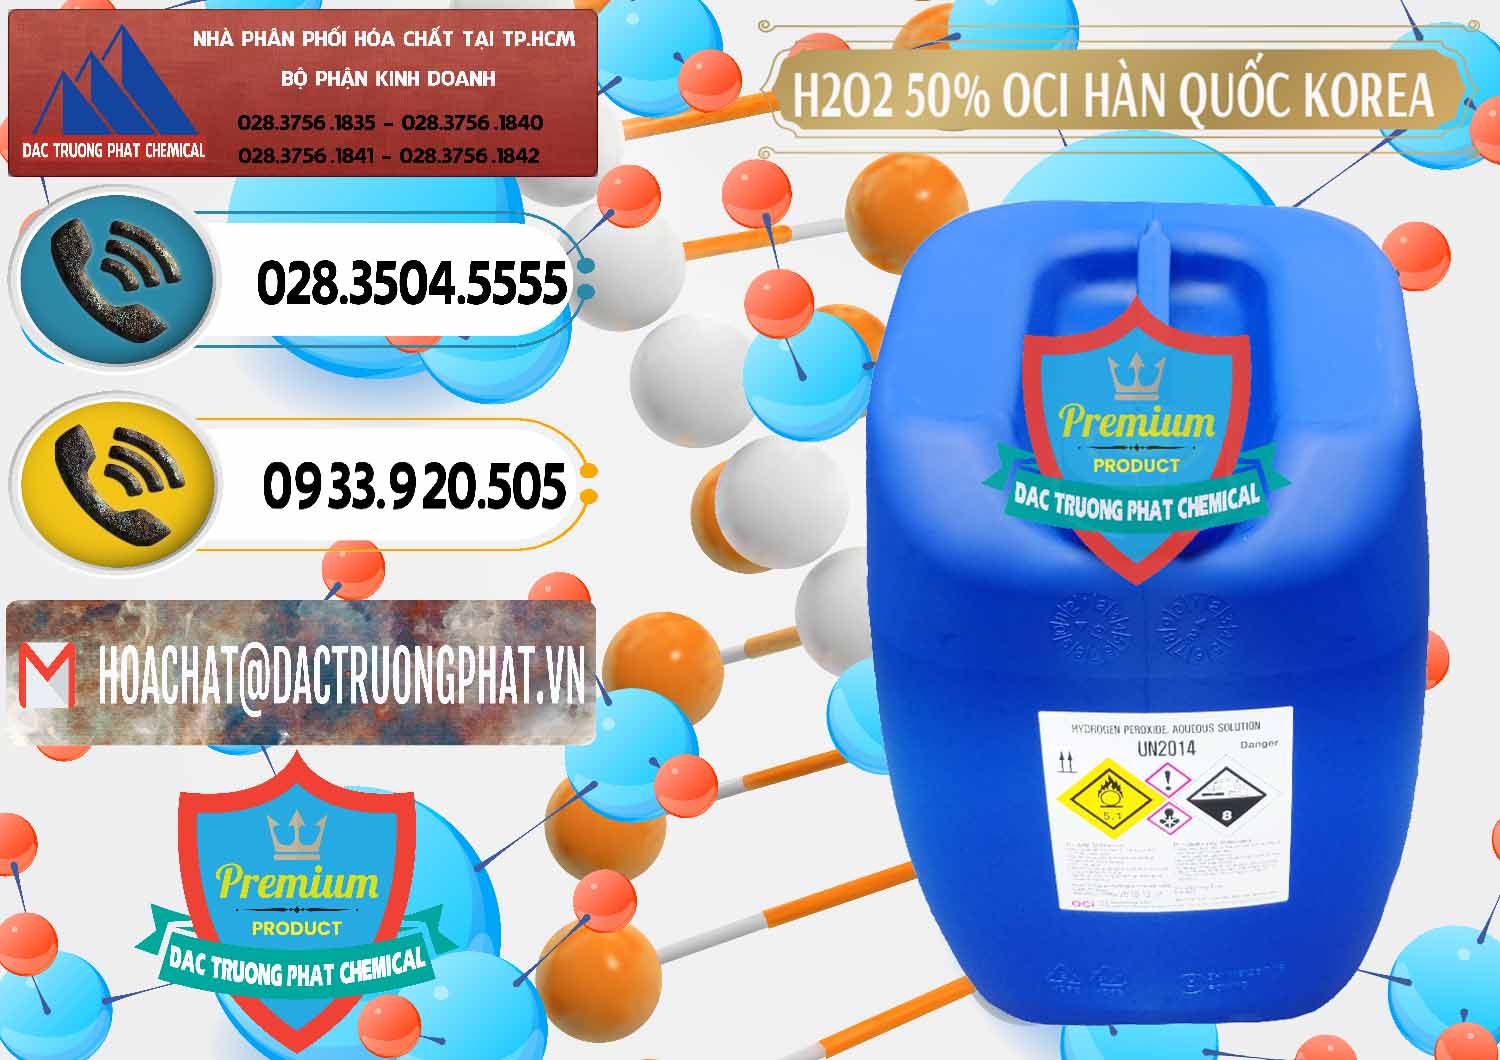 Nơi chuyên cung ứng ( bán ) H2O2 - Hydrogen Peroxide 50% OCI Hàn Quốc Korea - 0075 - Nhà phân phối và kinh doanh hóa chất tại TP.HCM - hoachatdetnhuom.vn